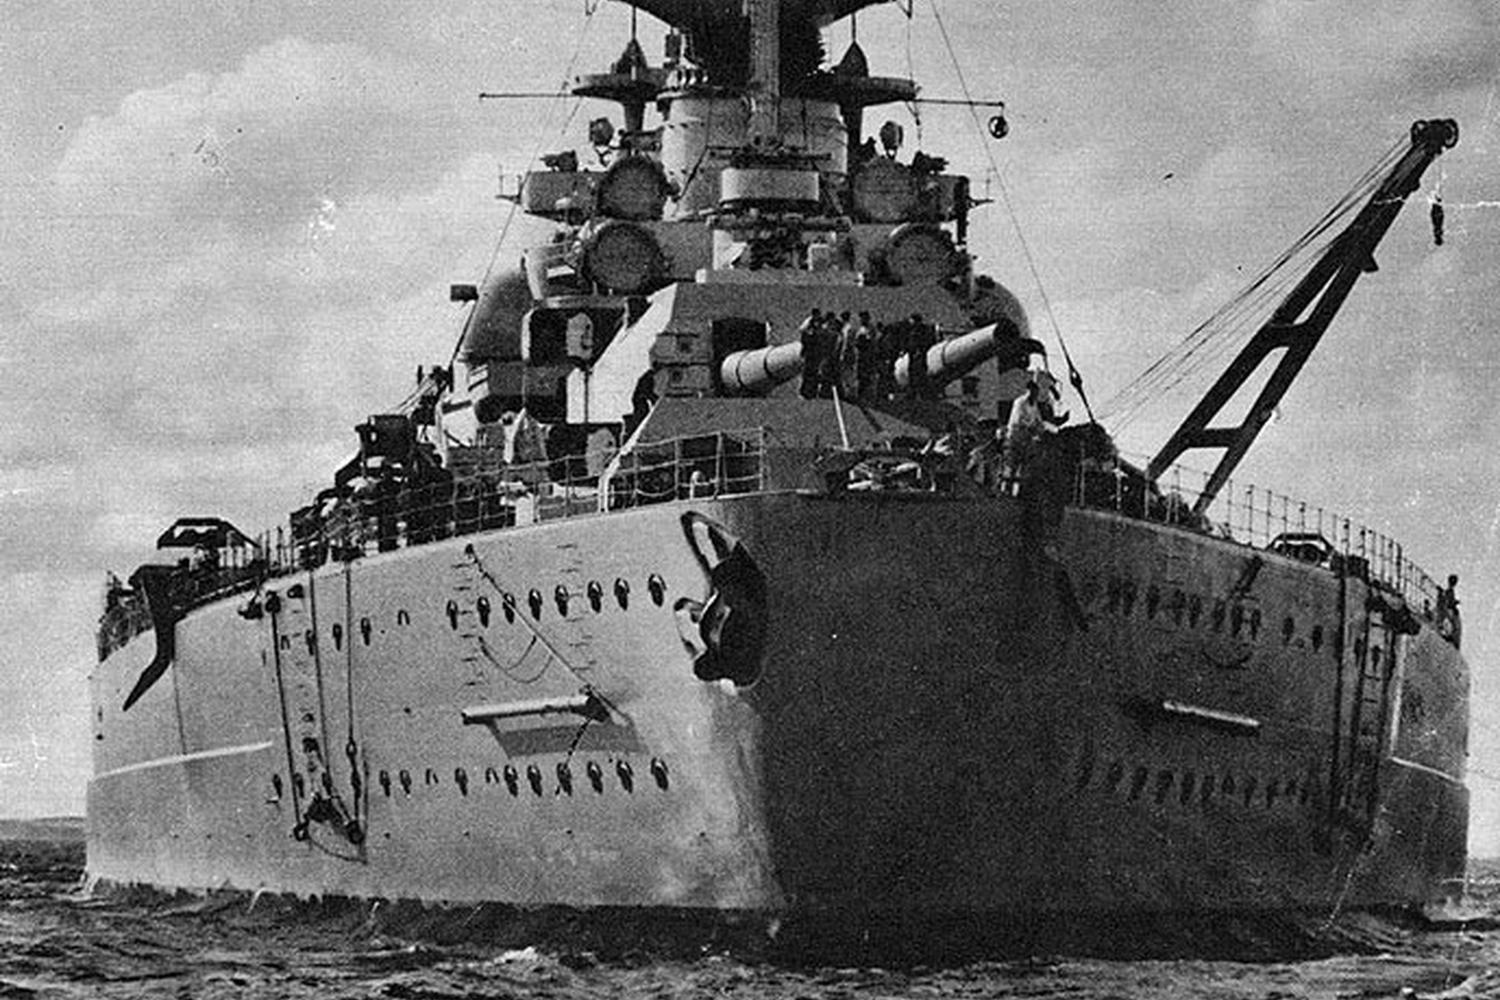 Tirpitz Battleship from World War II